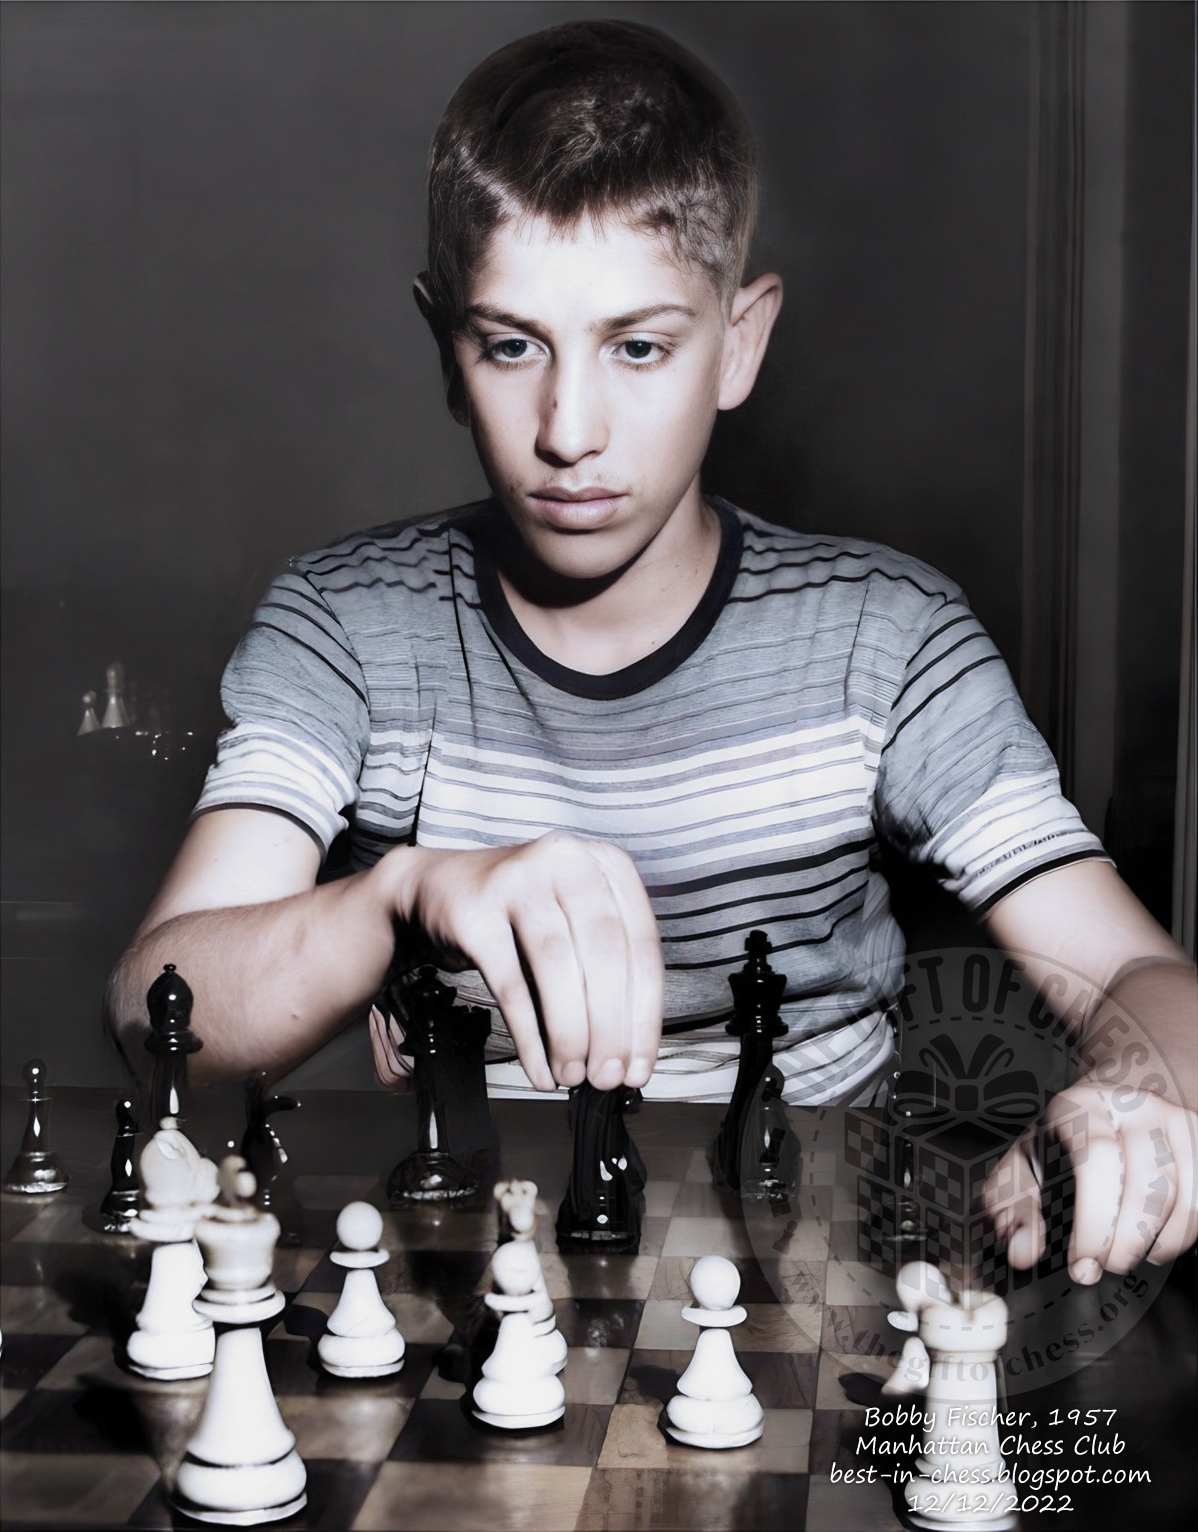 World blindfold chess champion G Koltanowski playing chess News